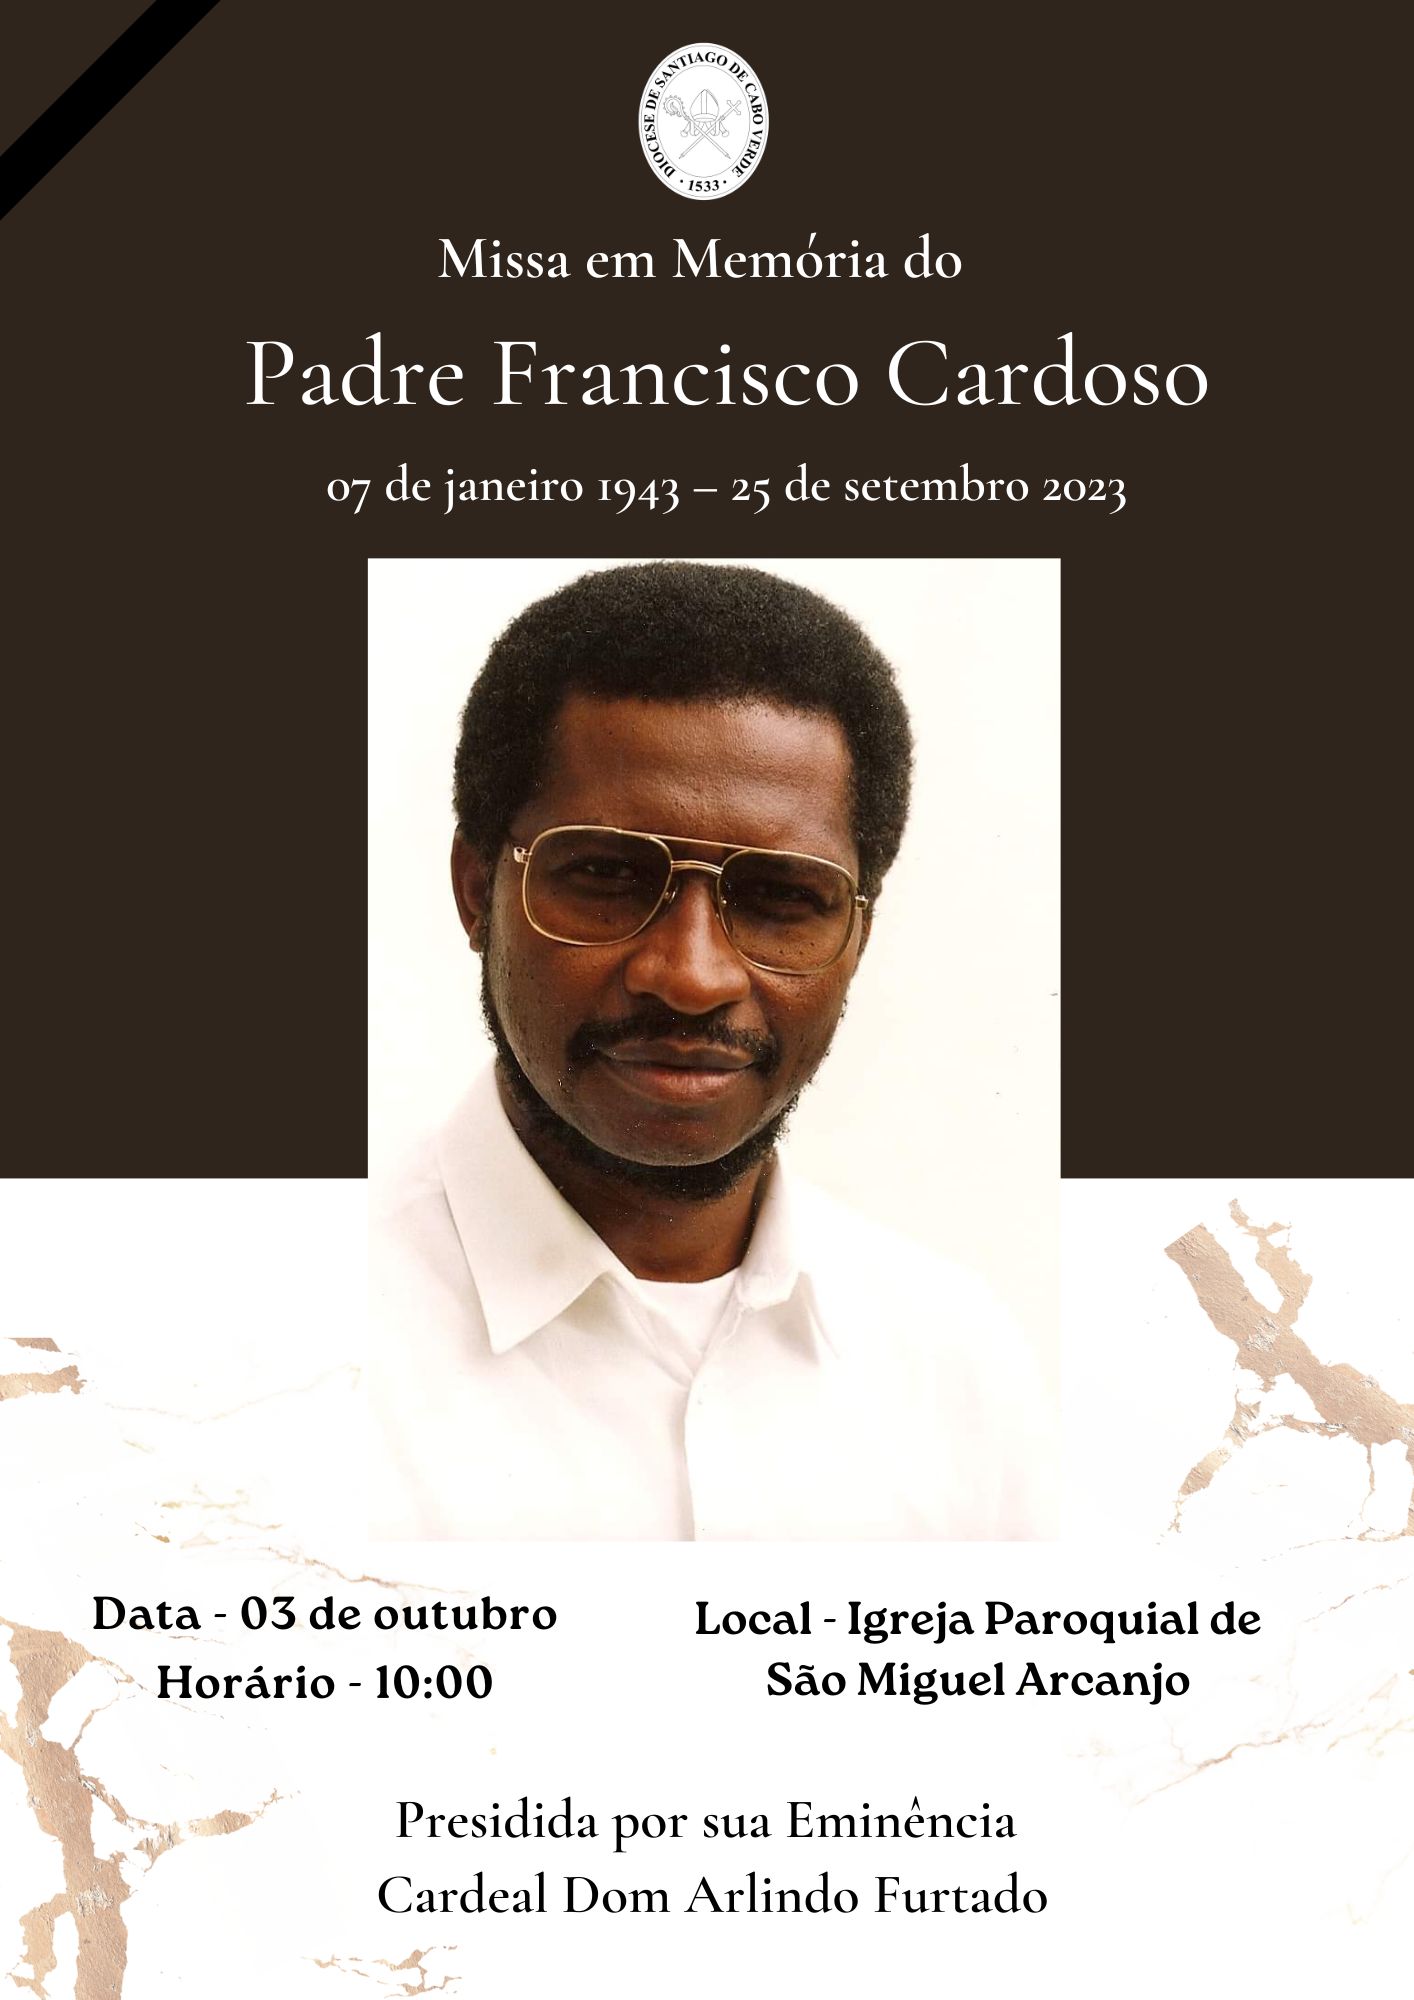 Missa em Memória do Padre Francisco Cardoso